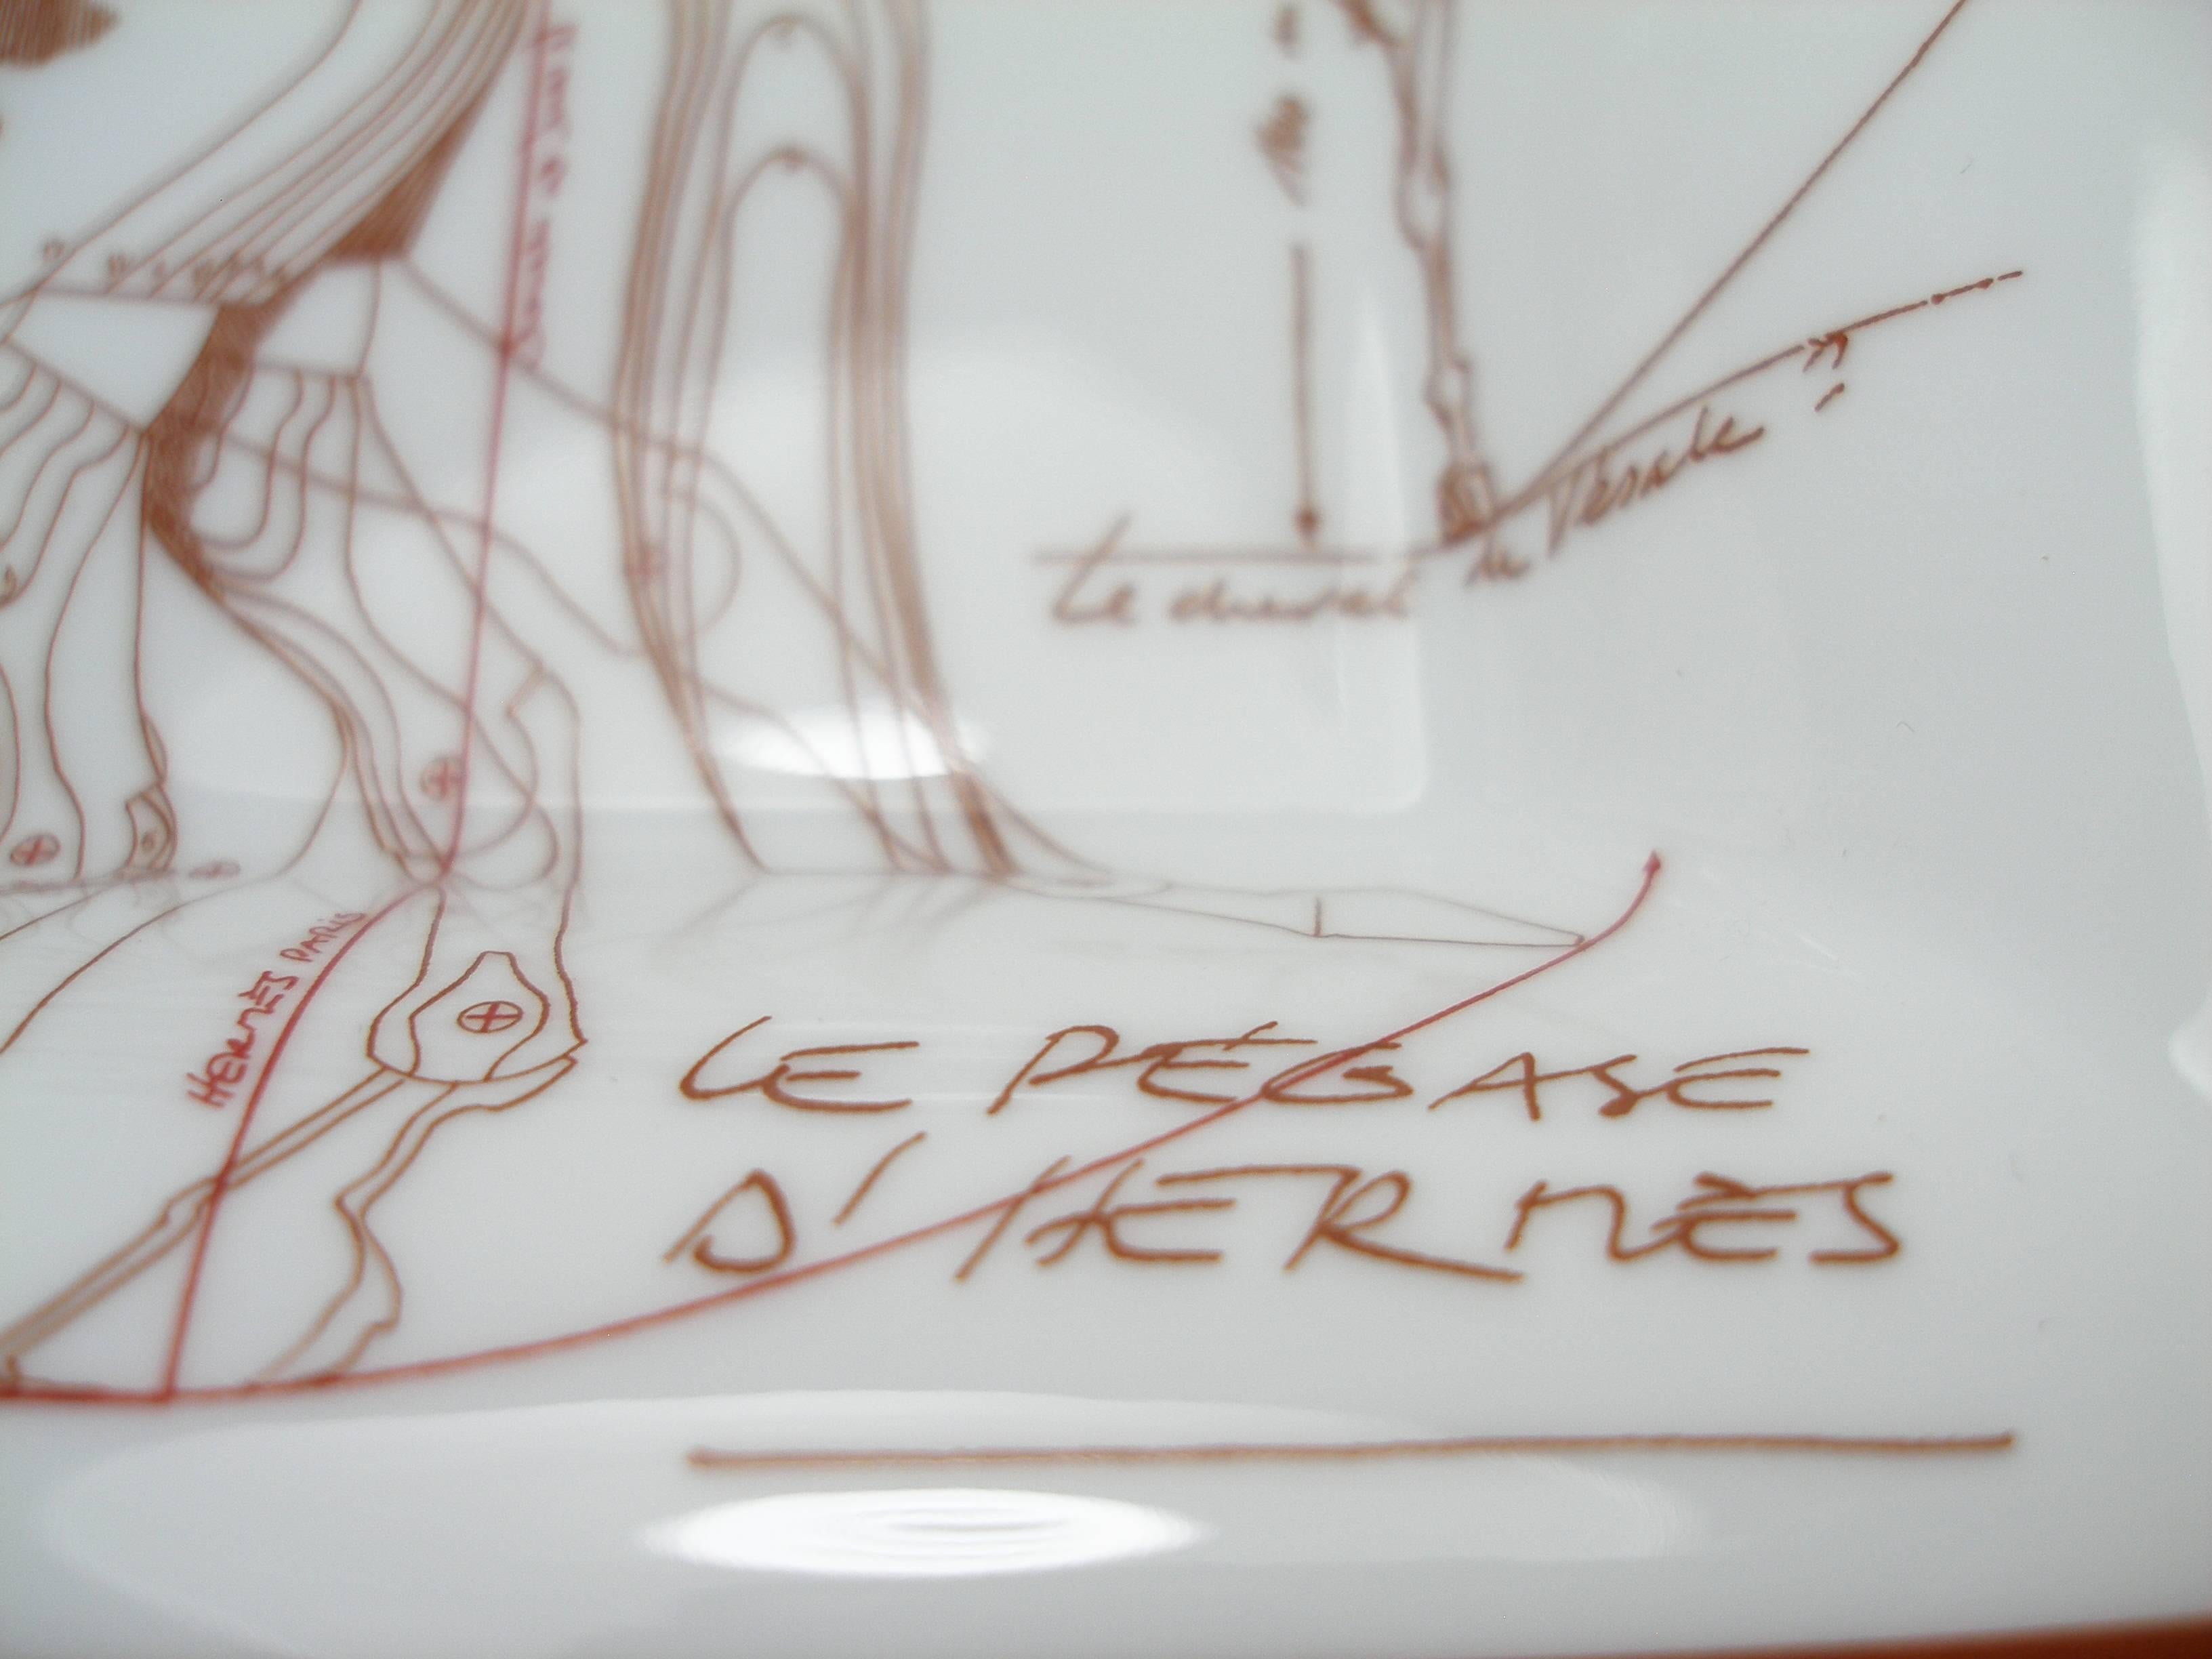 Hermès Porcelain Change Tray Vide Poche Le Pégase d'Hermès 2014  3